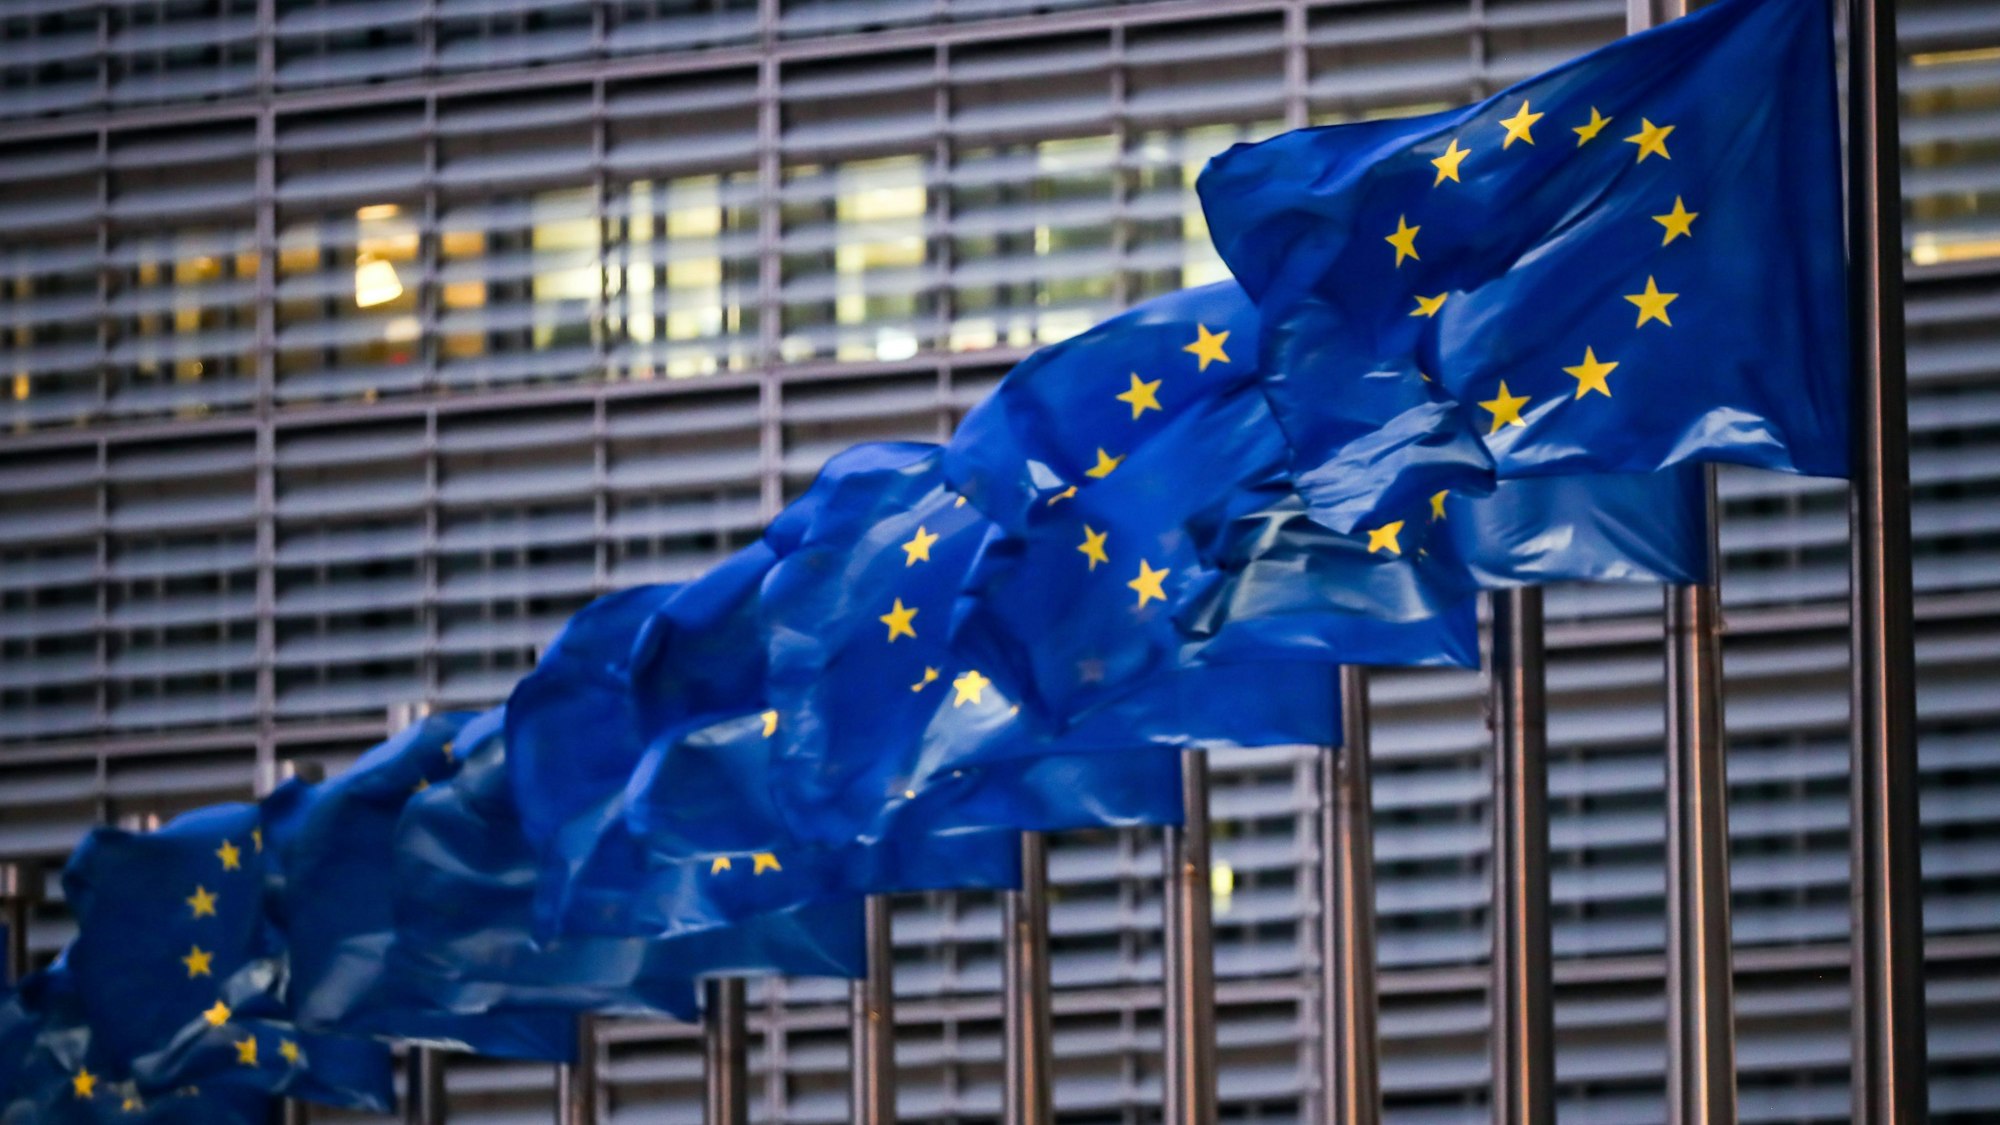 Europaflaggen wehen vor dem Sitz der EU-Kommission in Brüssel. Das sind die Flaggen der Europäischen Union.